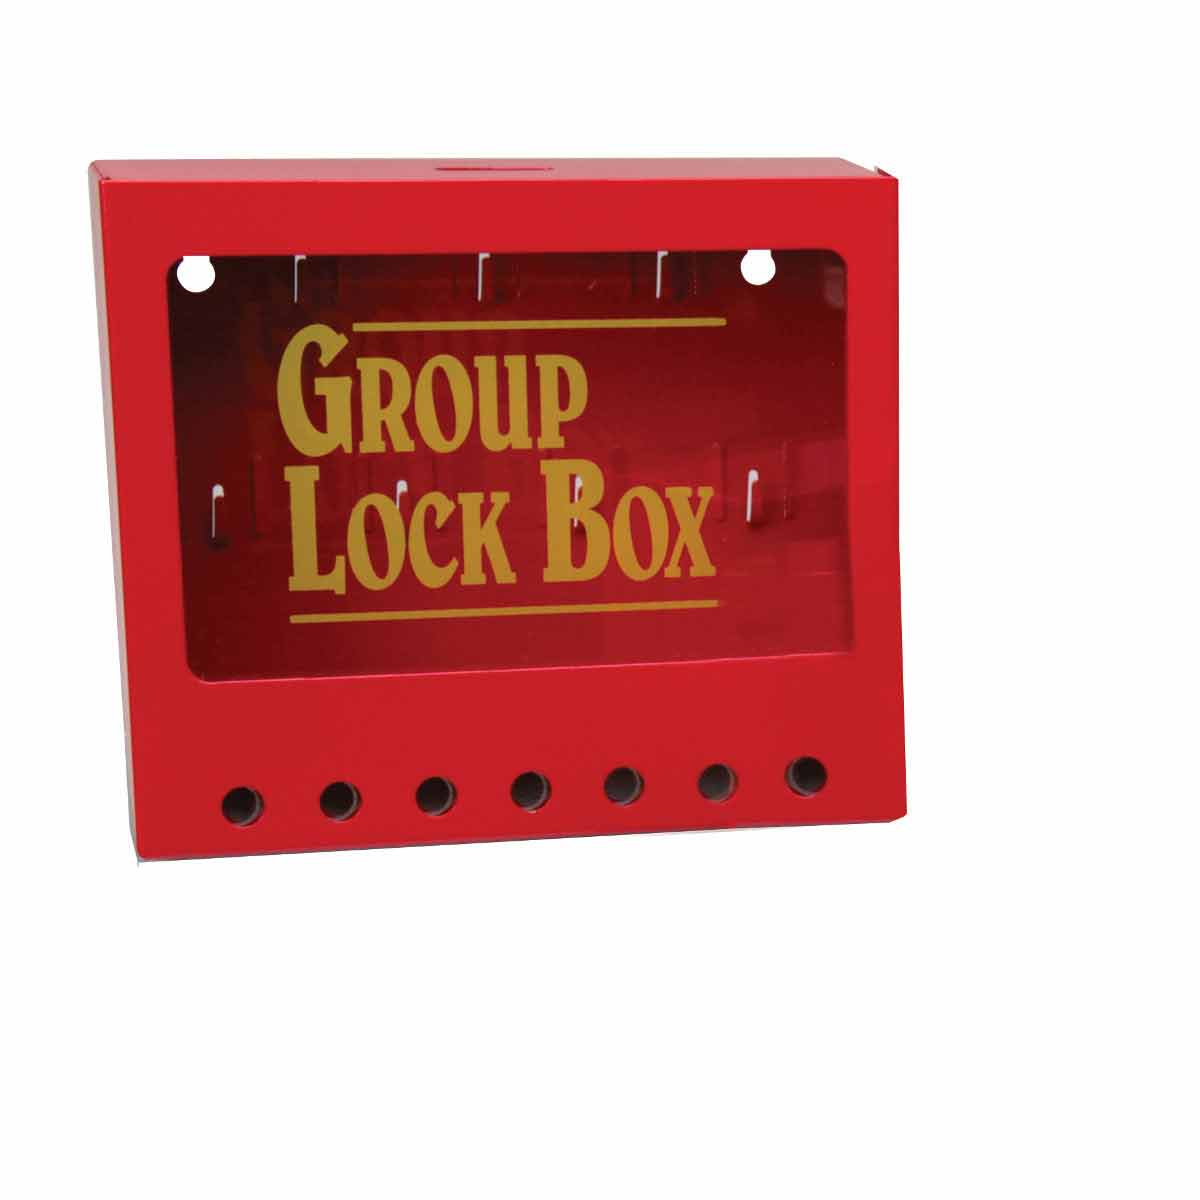 METAL WALL LOCK BOX, SMALL